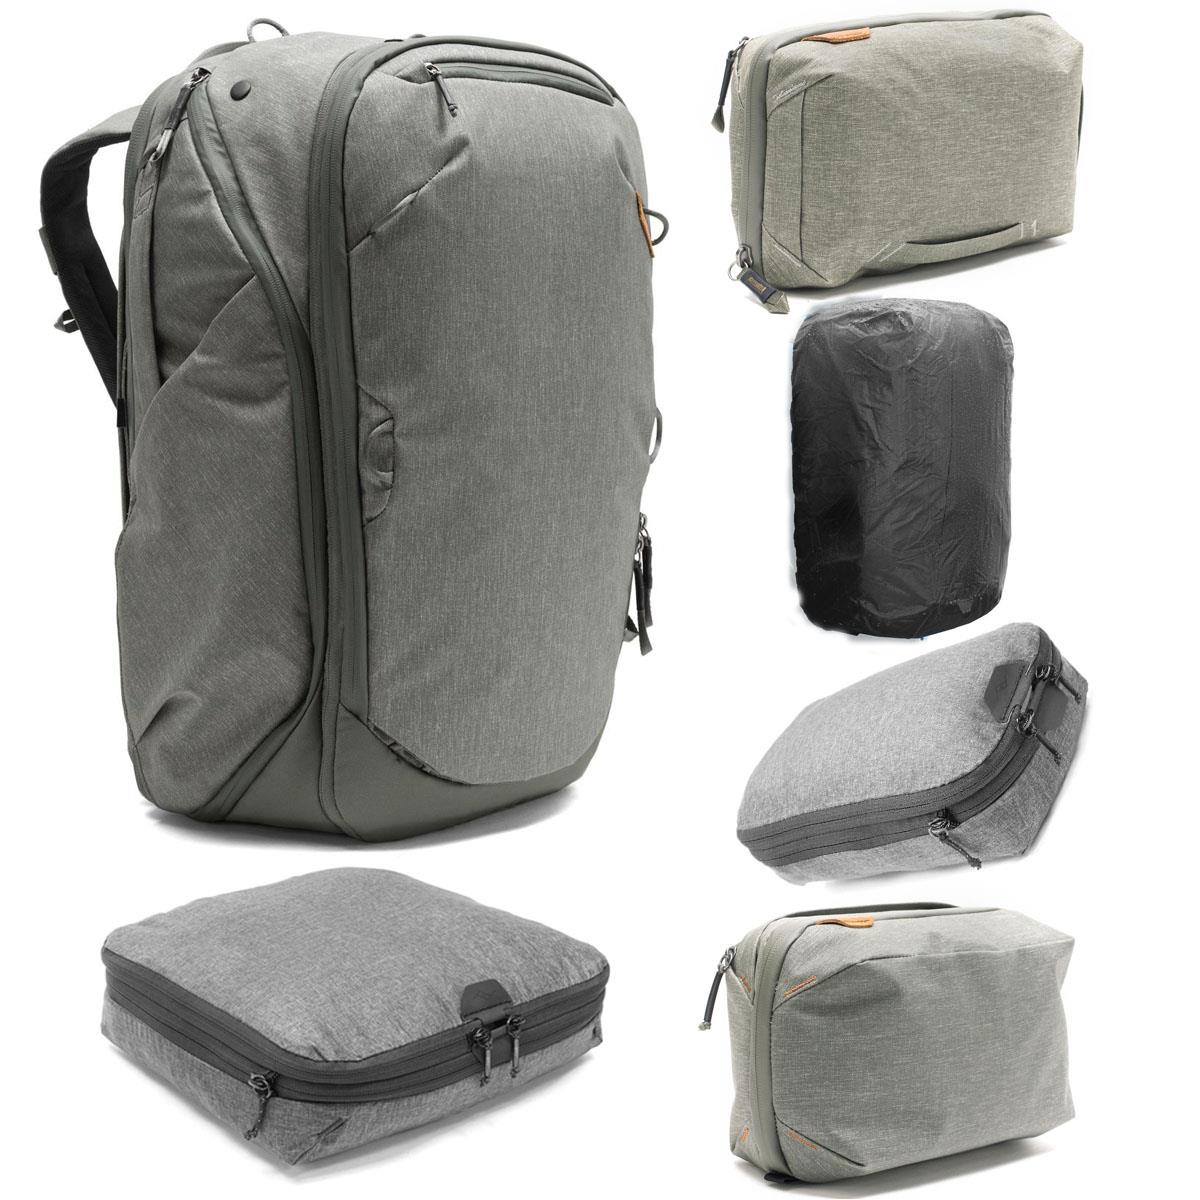 Image of Peak Design Travel Bundle with 45L Travel Backpack (Sage)